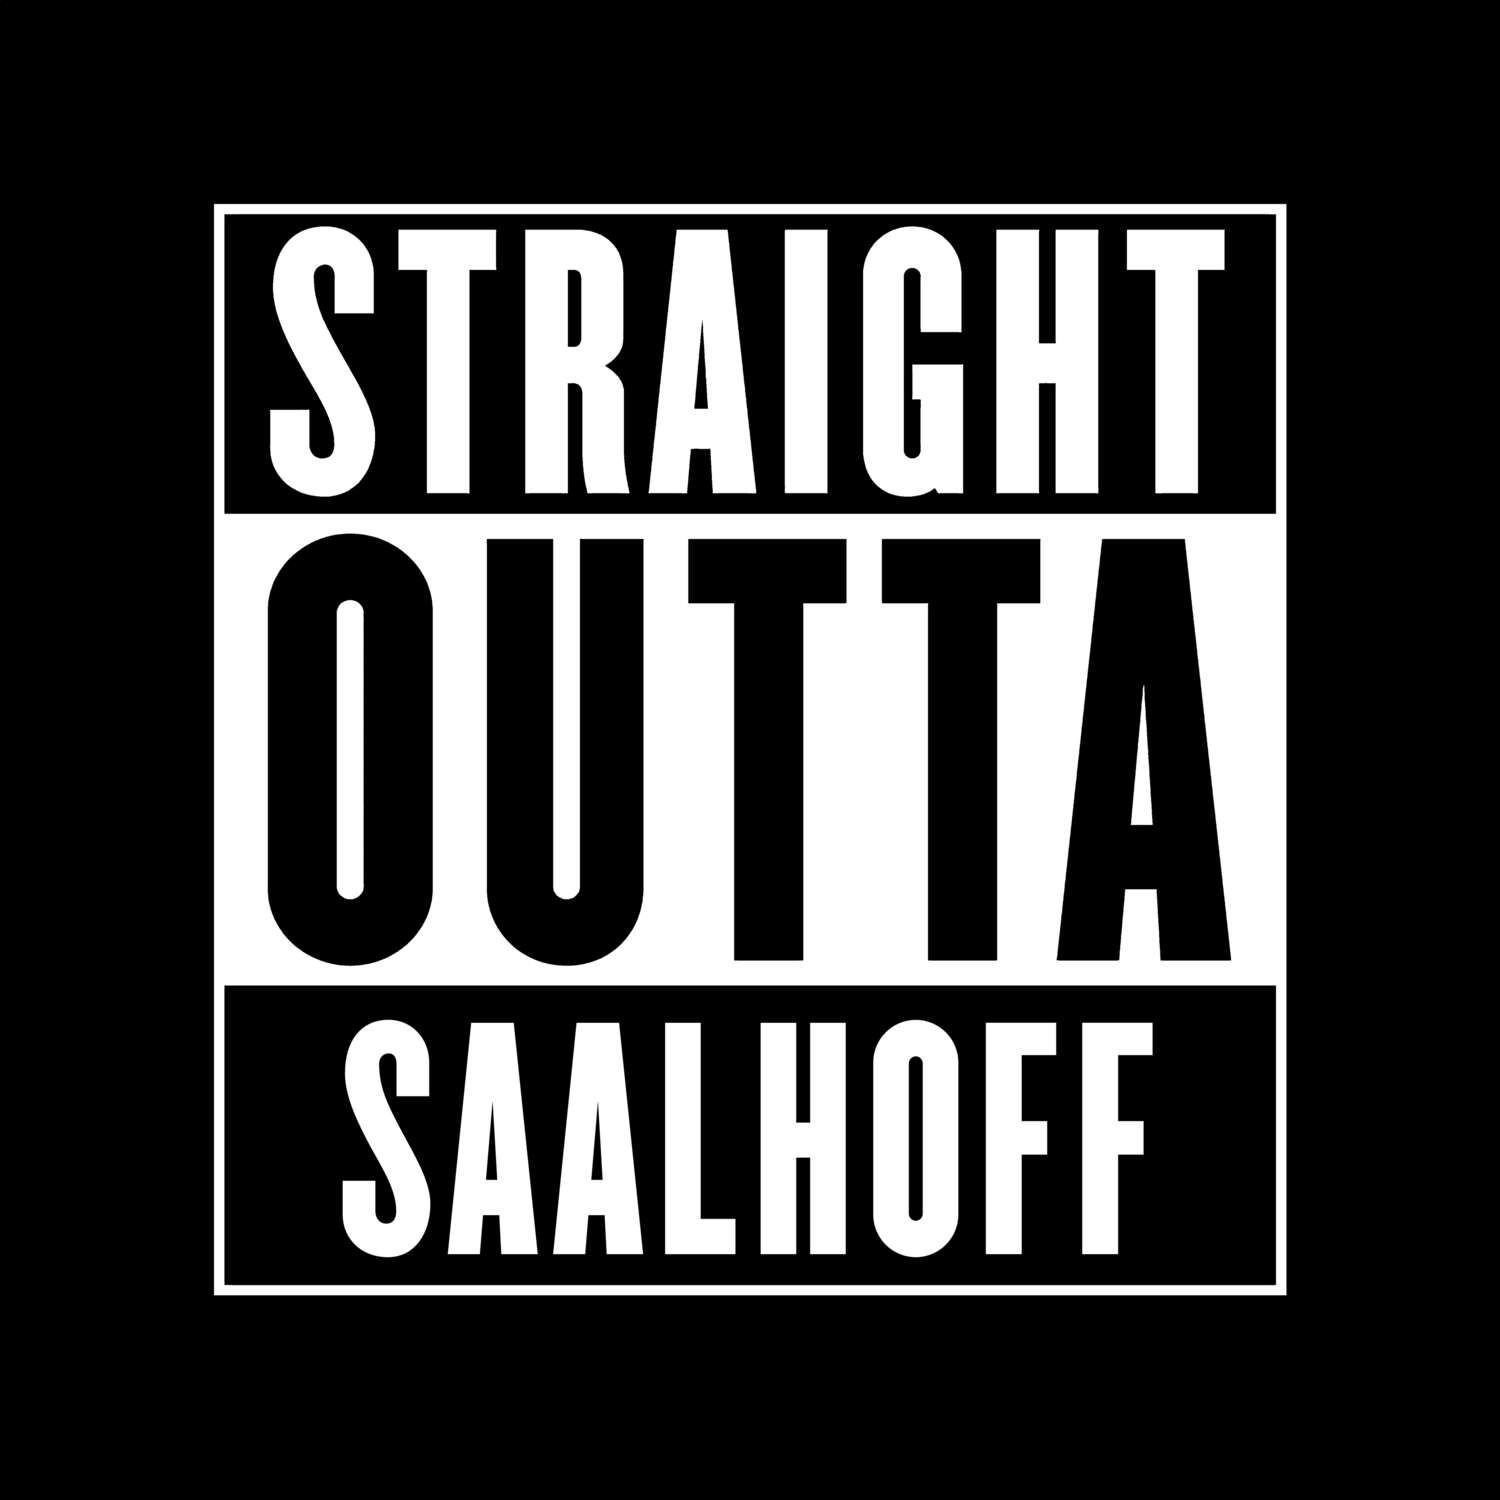 Saalhoff T-Shirt »Straight Outta«